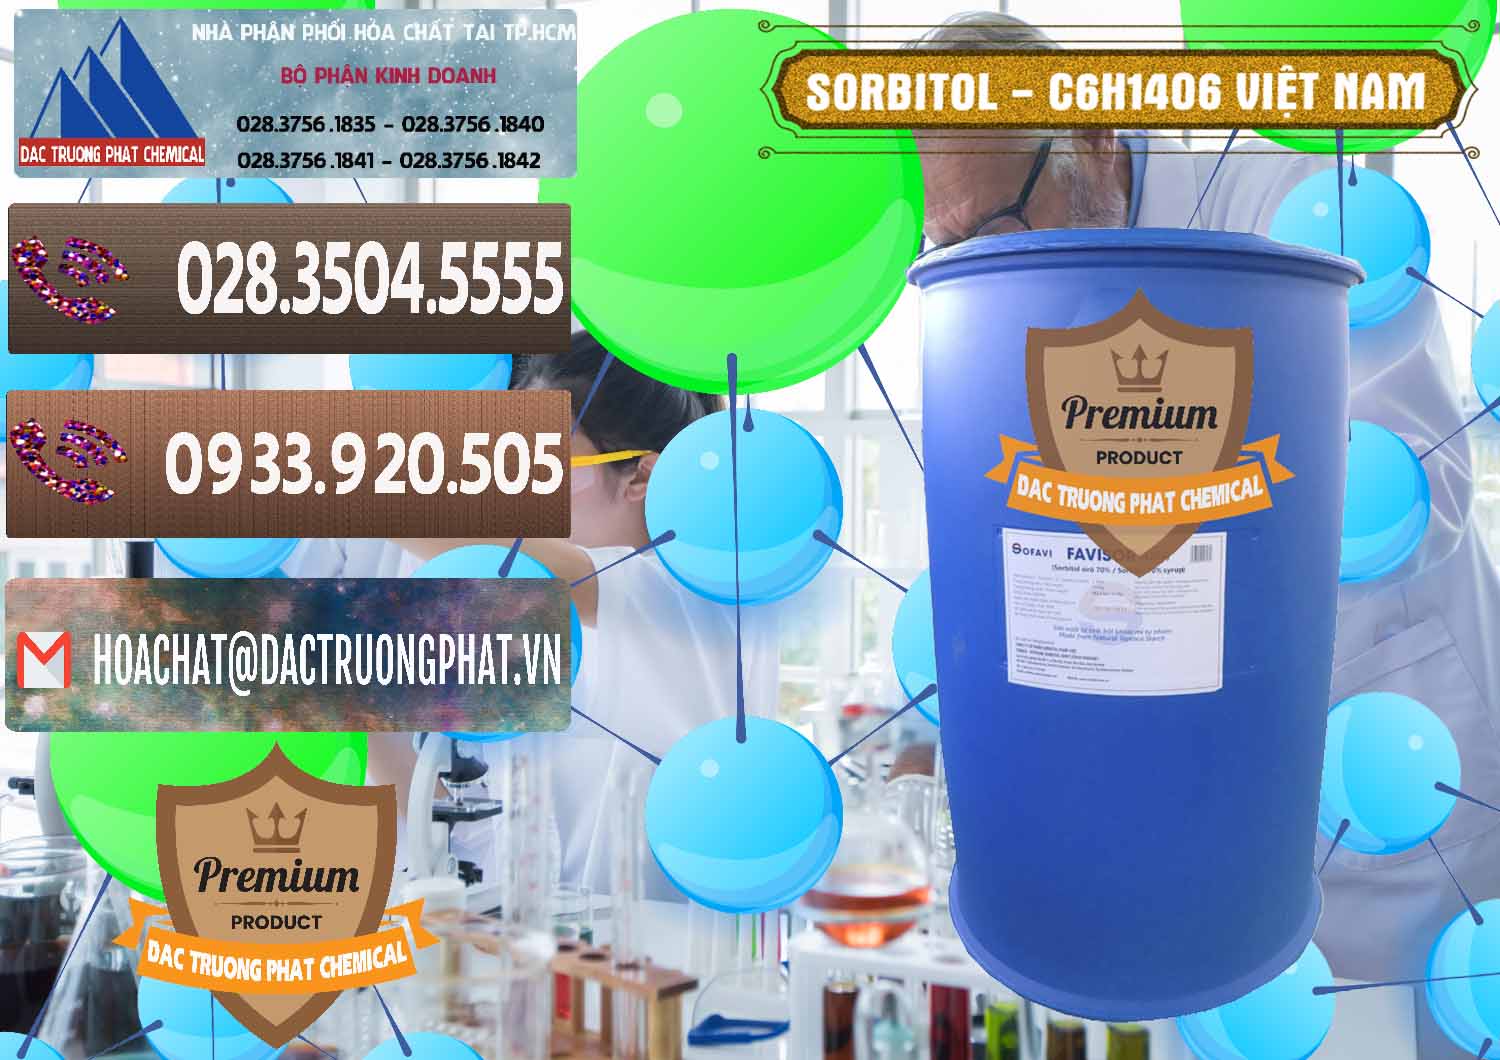 Cty chuyên cung ứng ( phân phối ) Sorbitol - C6H14O6 Lỏng 70% Food Grade Việt Nam - 0438 - Công ty cung cấp _ kinh doanh hóa chất tại TP.HCM - hoachatviet.net